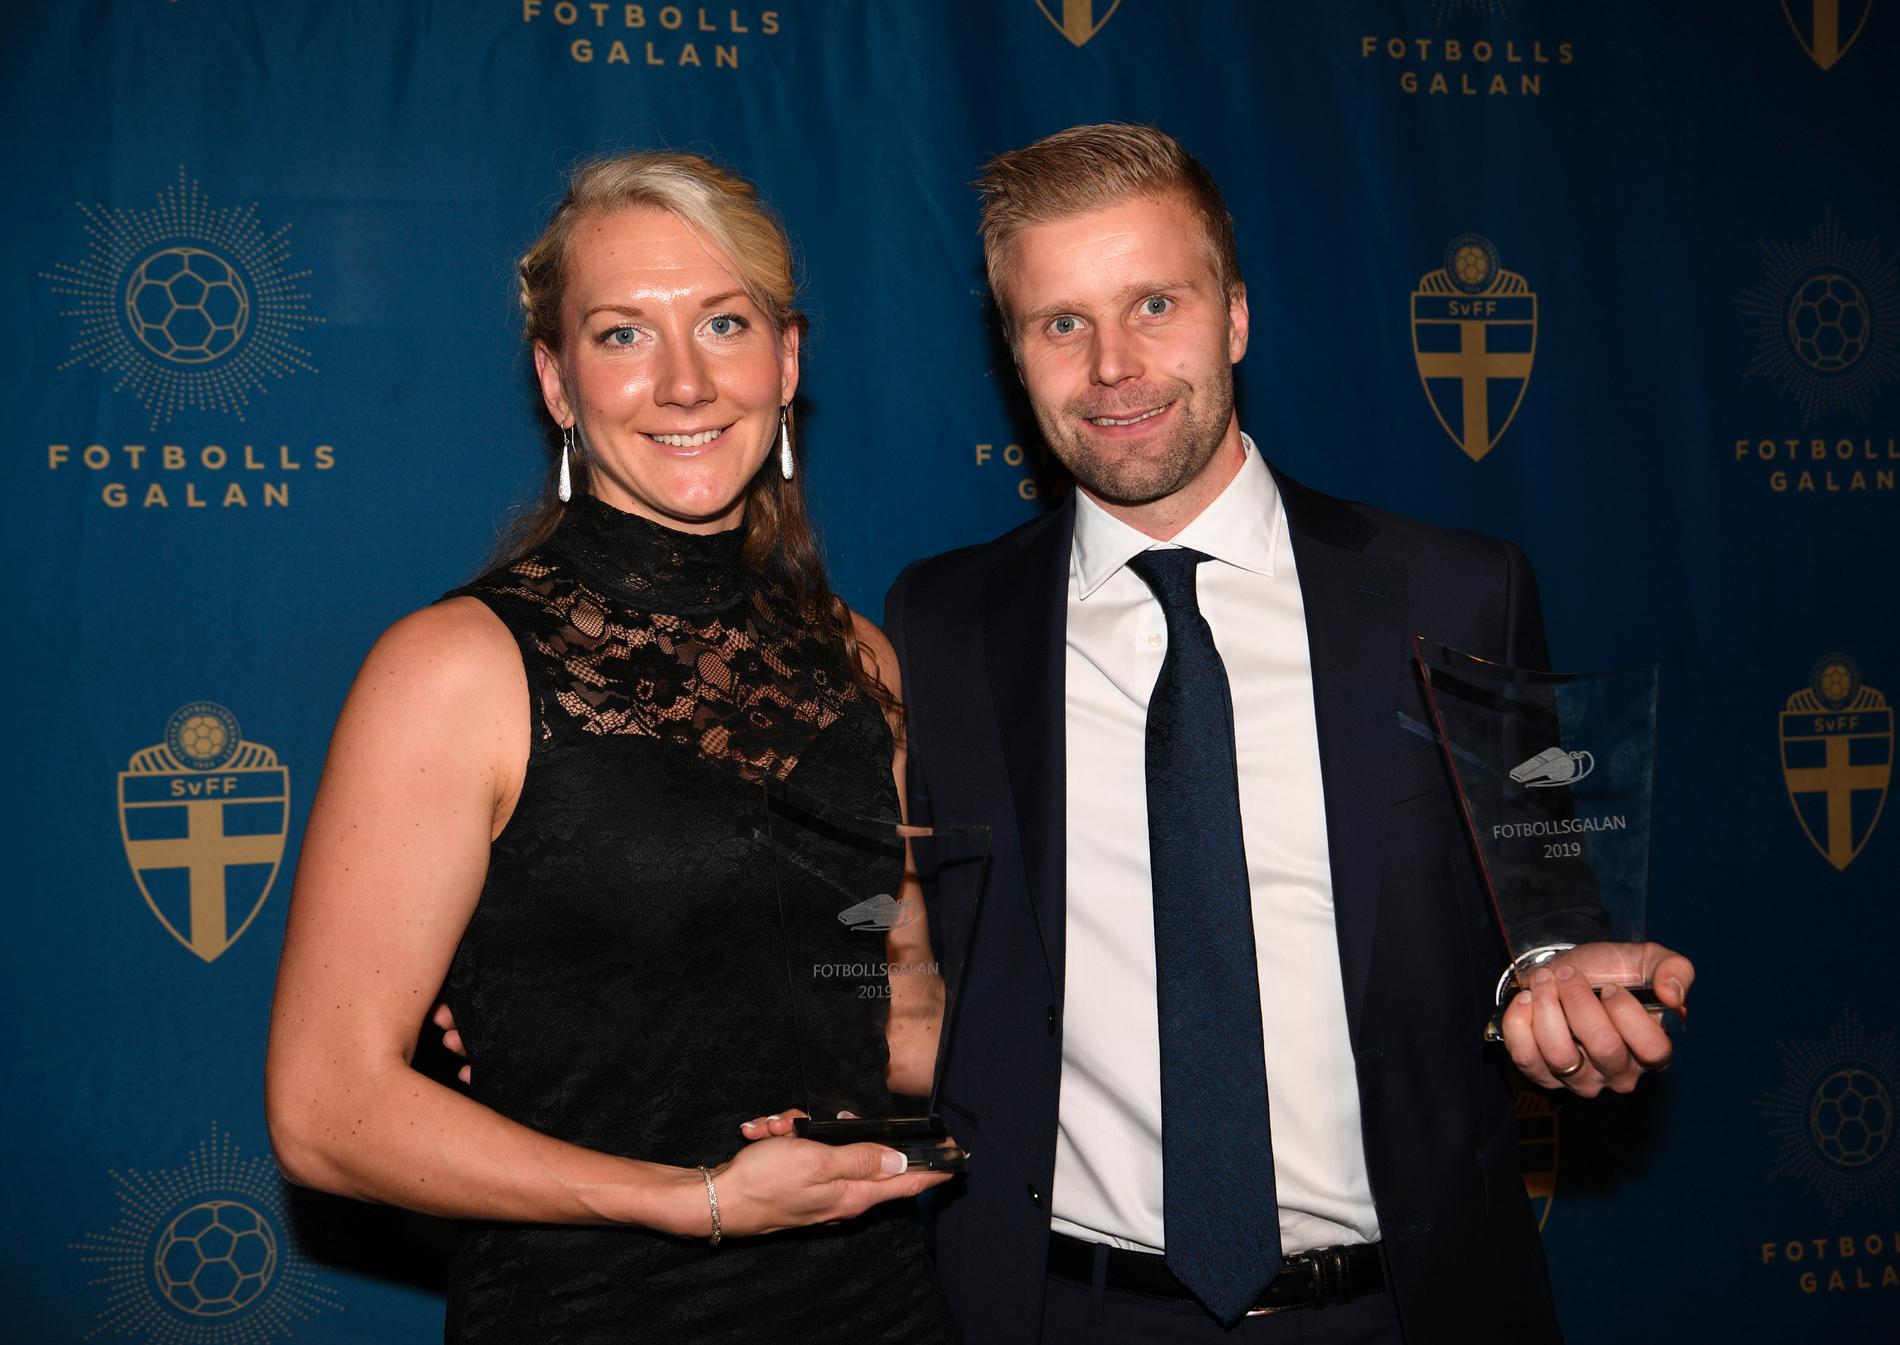 Tess Olofsson och Glen Nyberg får priset "Årets domare" på fotbollsgalan 2019.